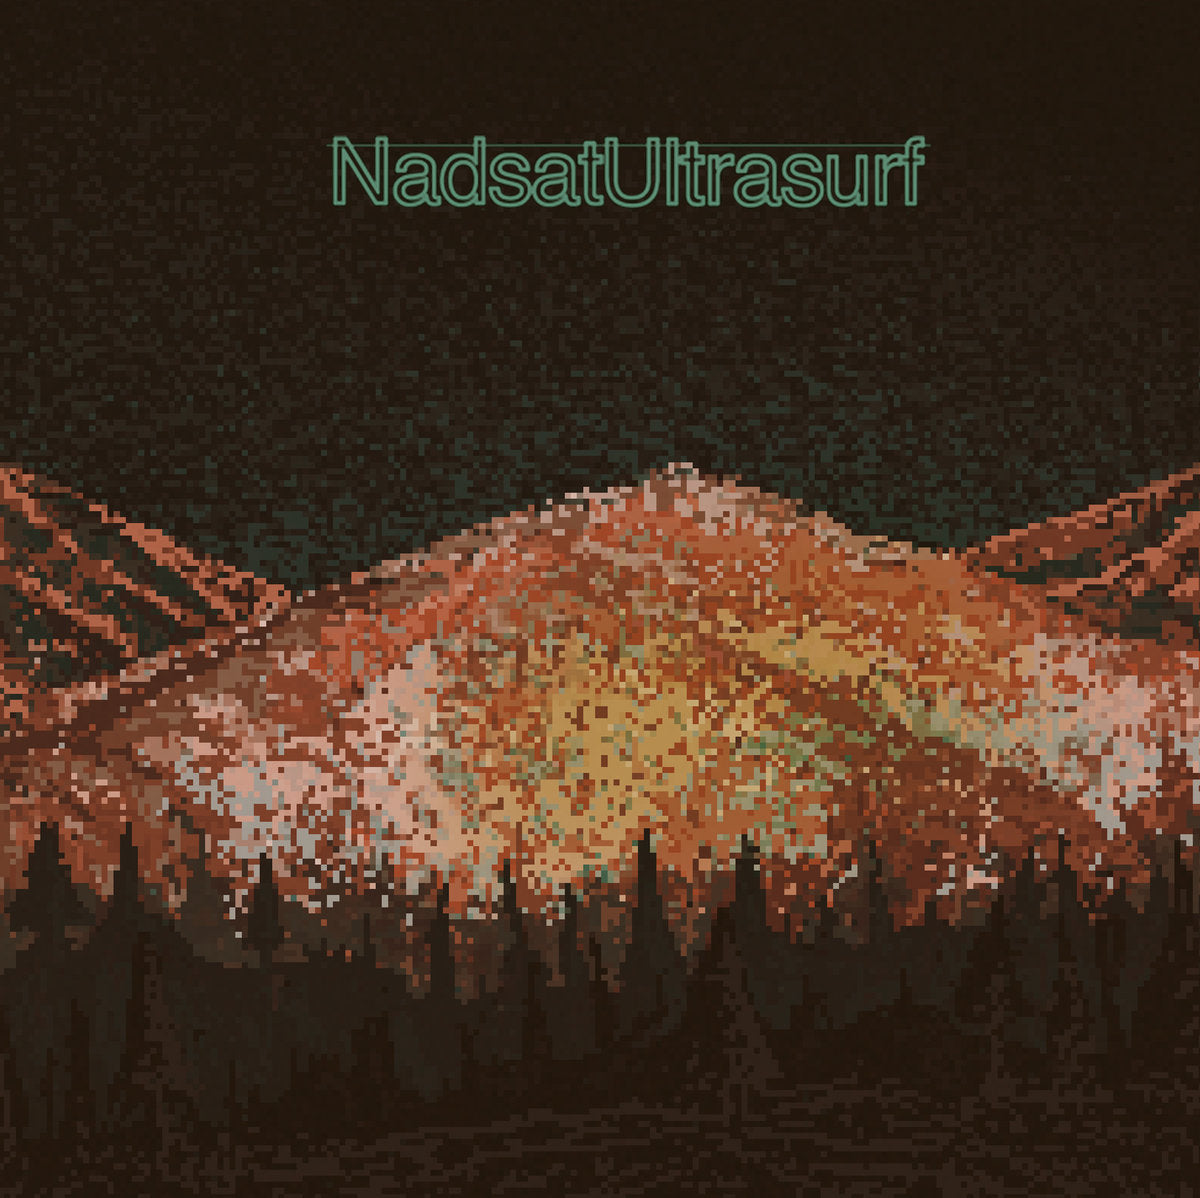 NADSAT "Ultrasurf" EP